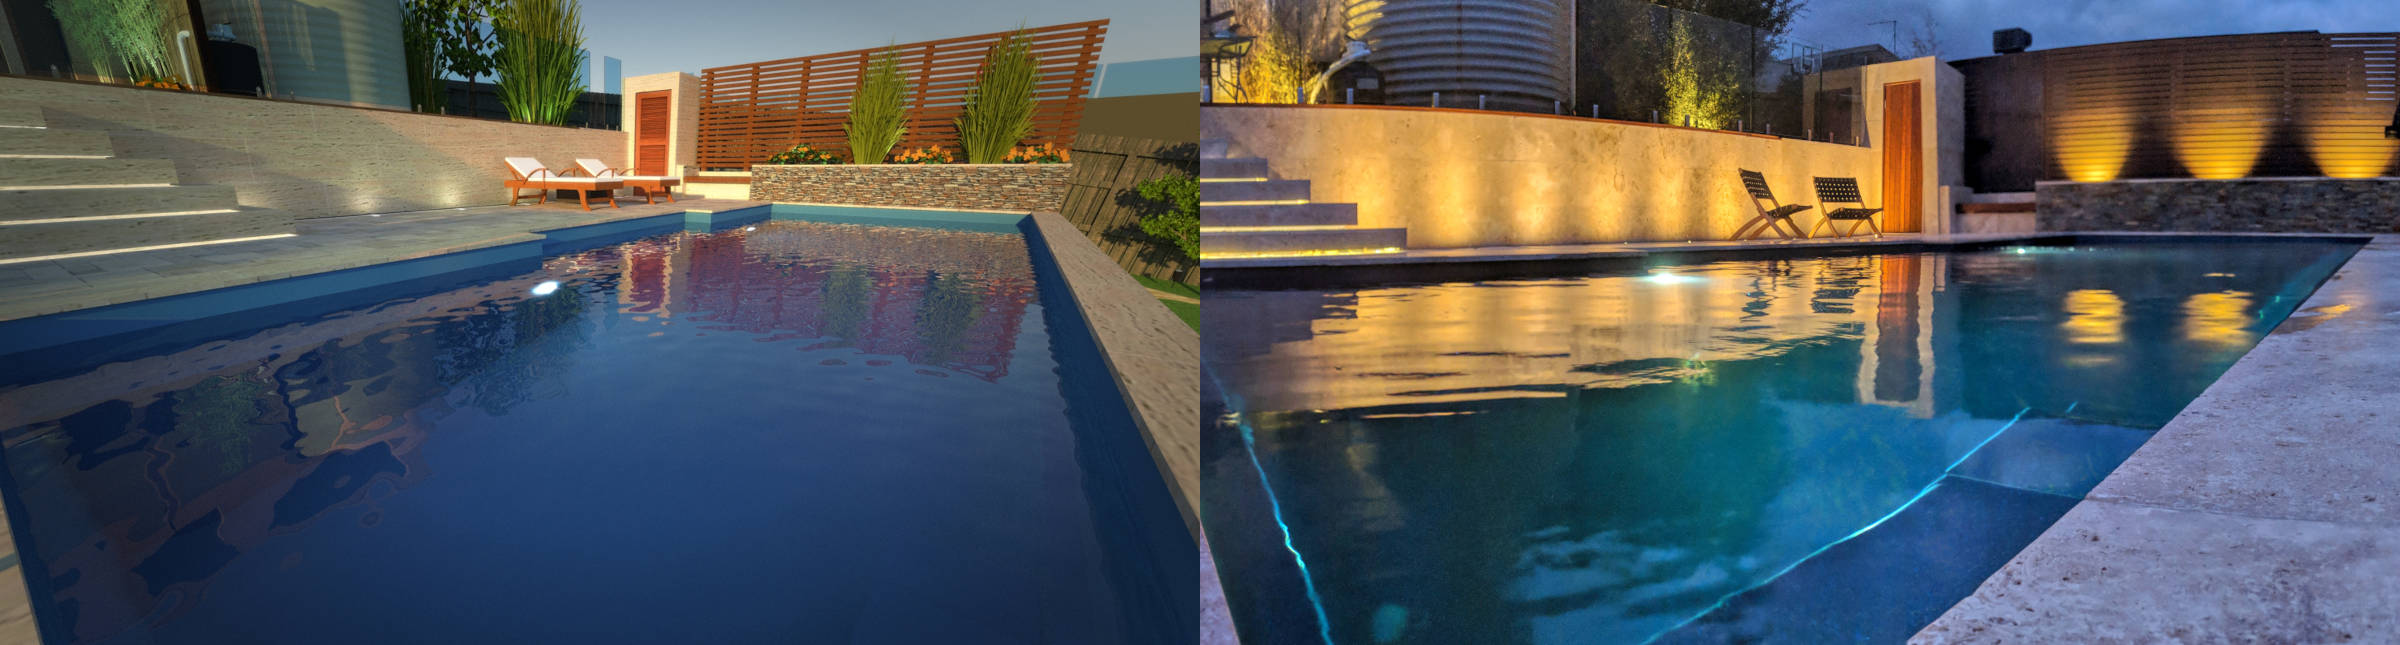 Pool render vs reality